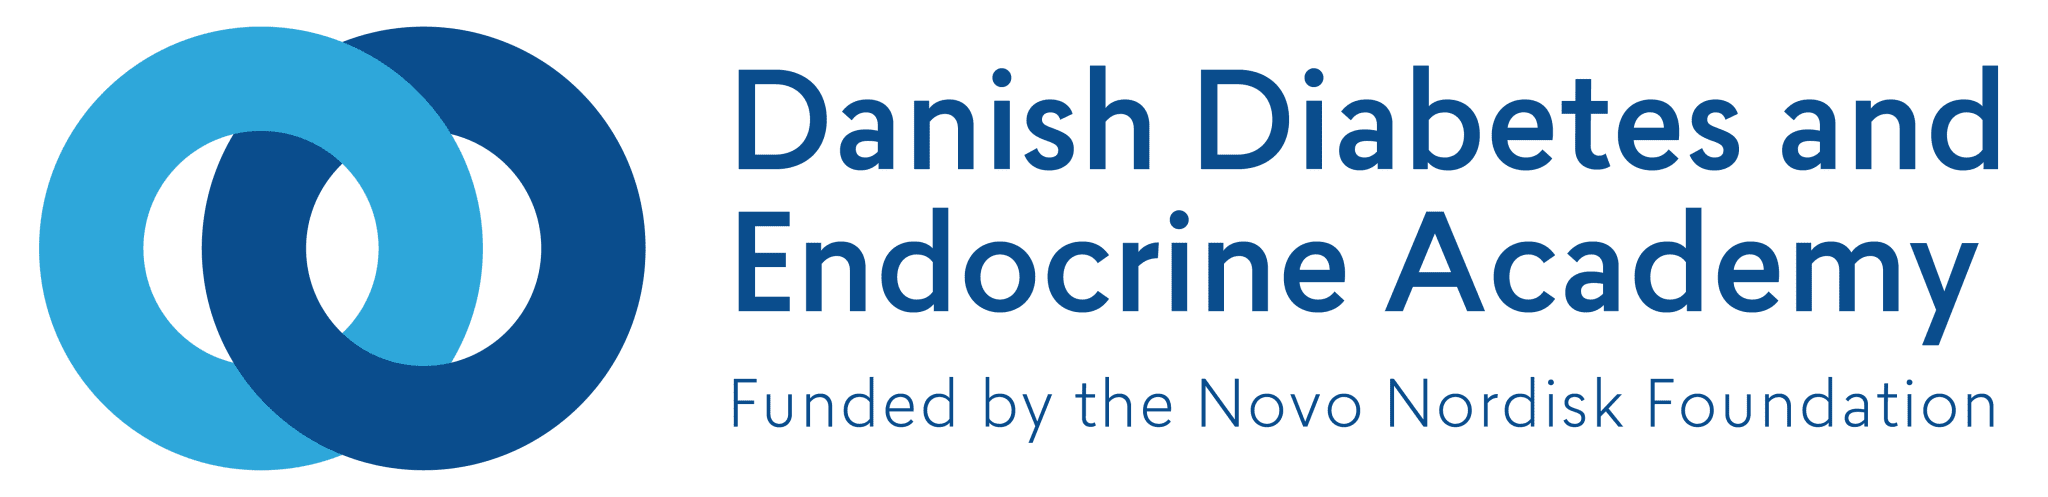 Danish Diabetes and Endocrinology Academy logo